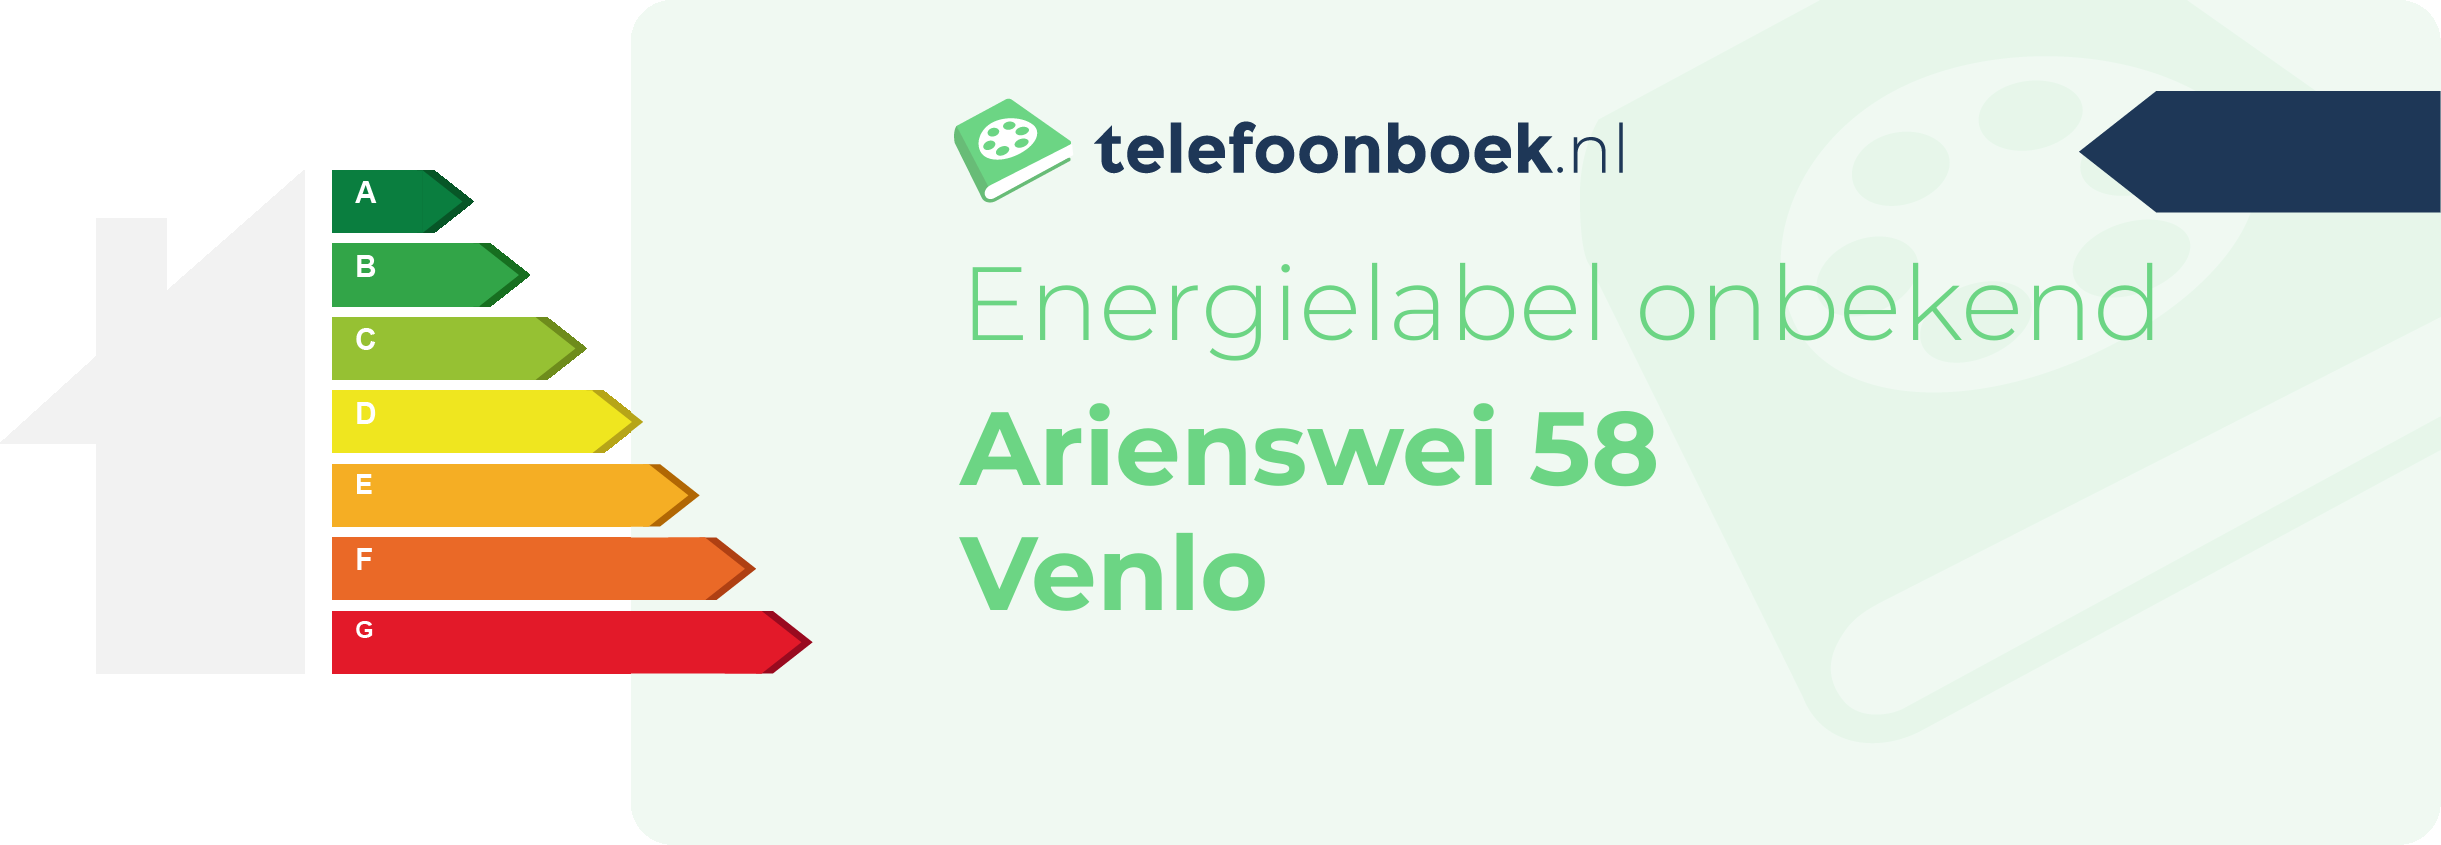 Energielabel Arienswei 58 Venlo